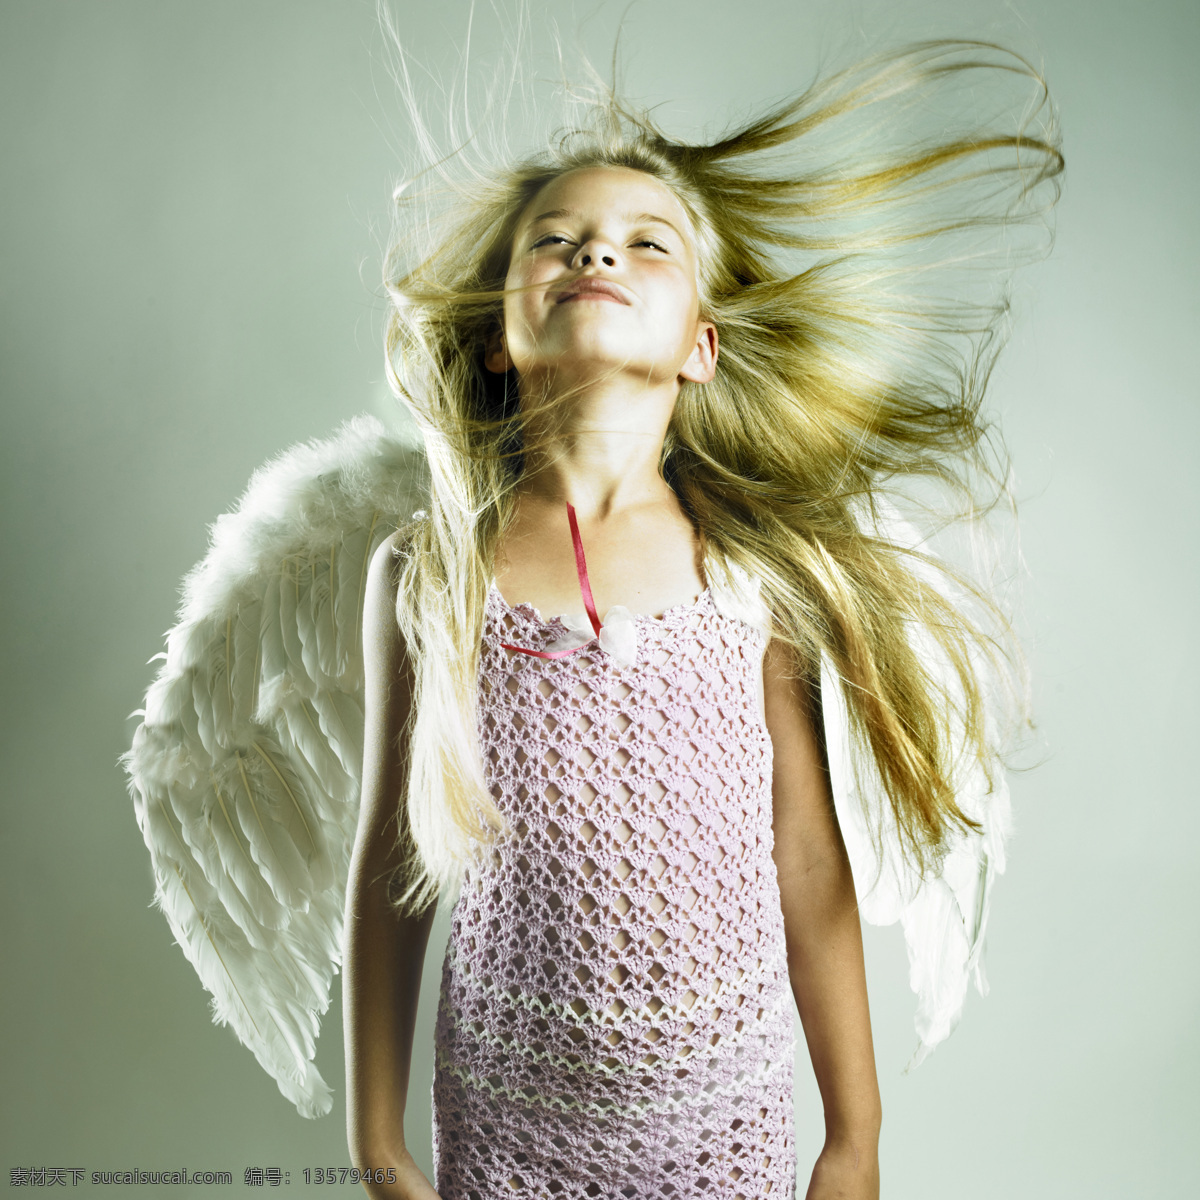 戴 翅膀 外国 小女孩 外国小女孩 天使翅膀 瓢发 人物摄影 美女图片 人物图片